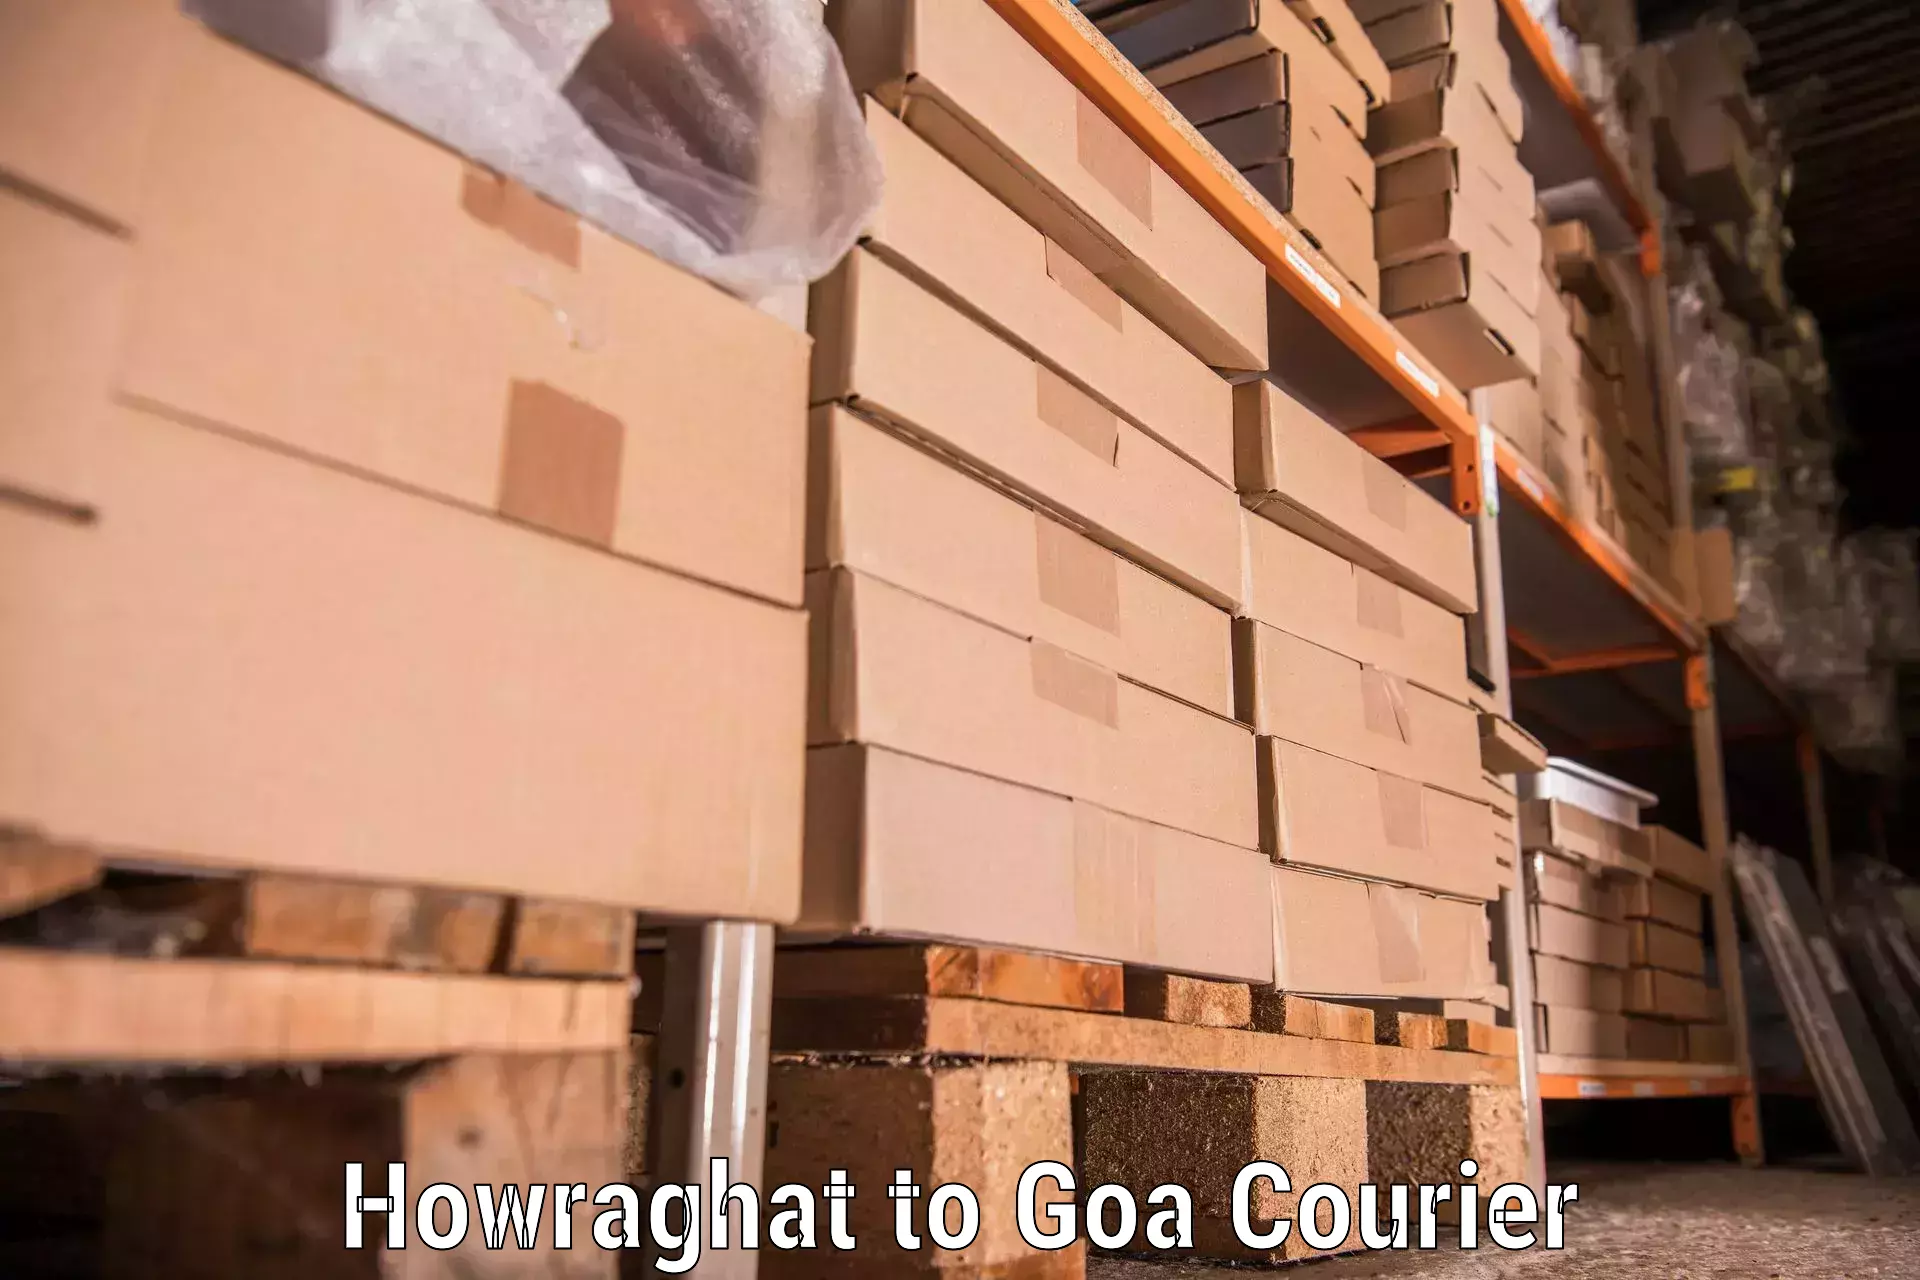 Household goods transport service Howraghat to Goa University